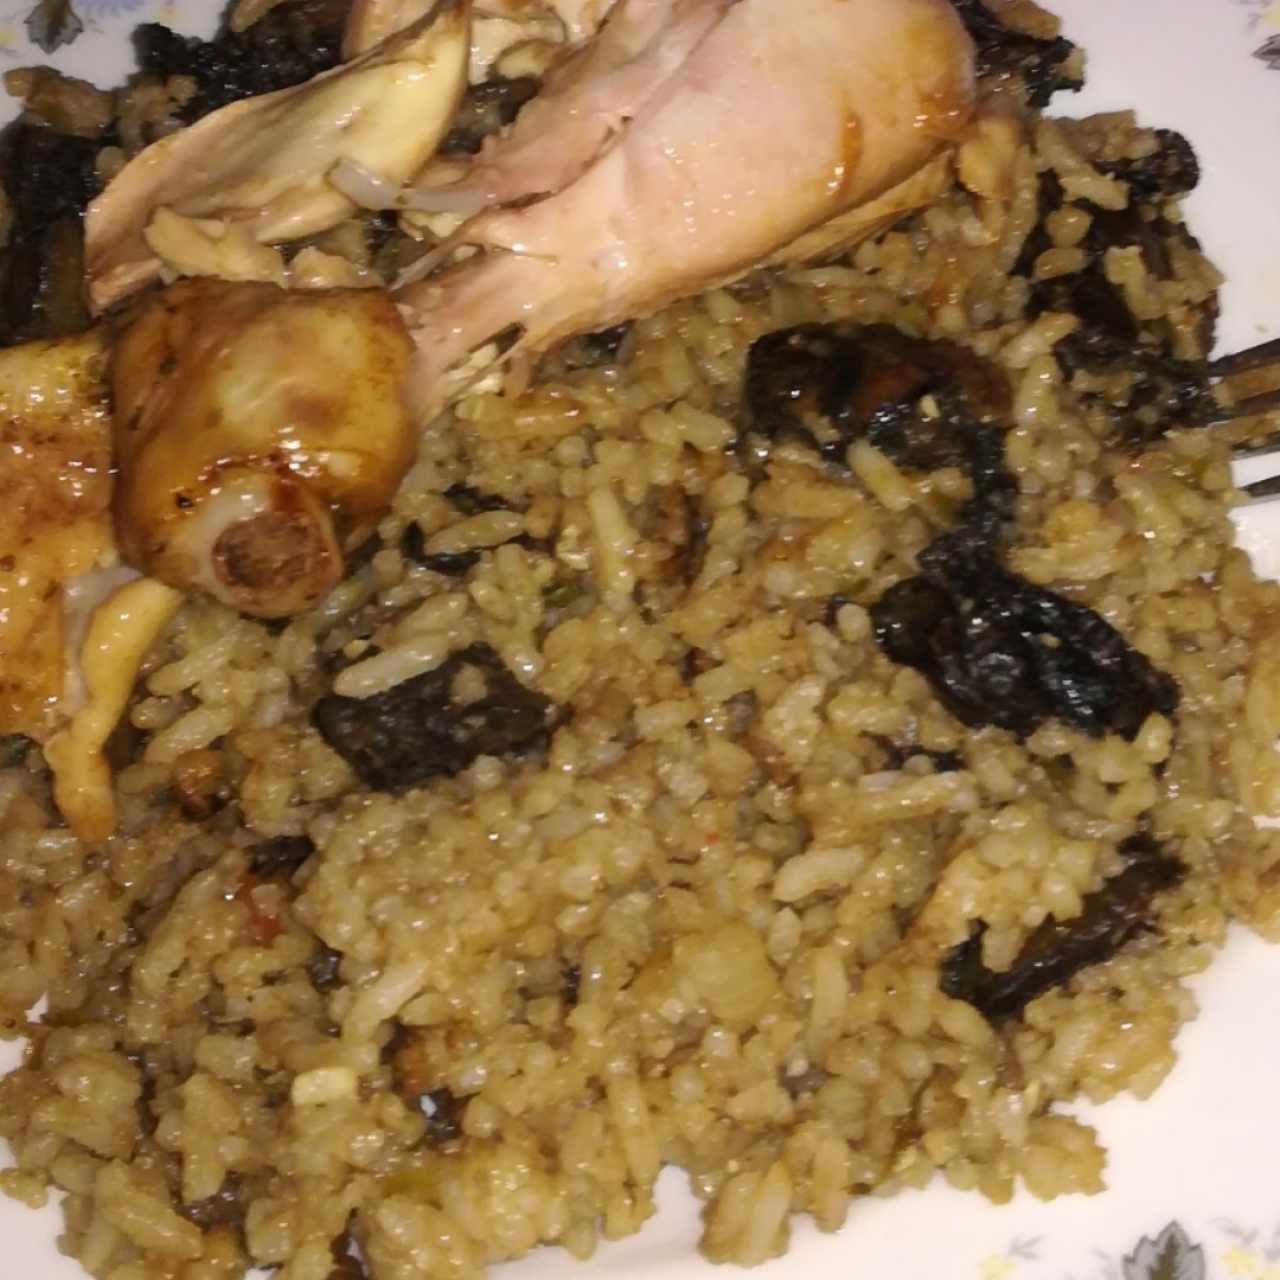 arroz de conchas negras con pollo asado